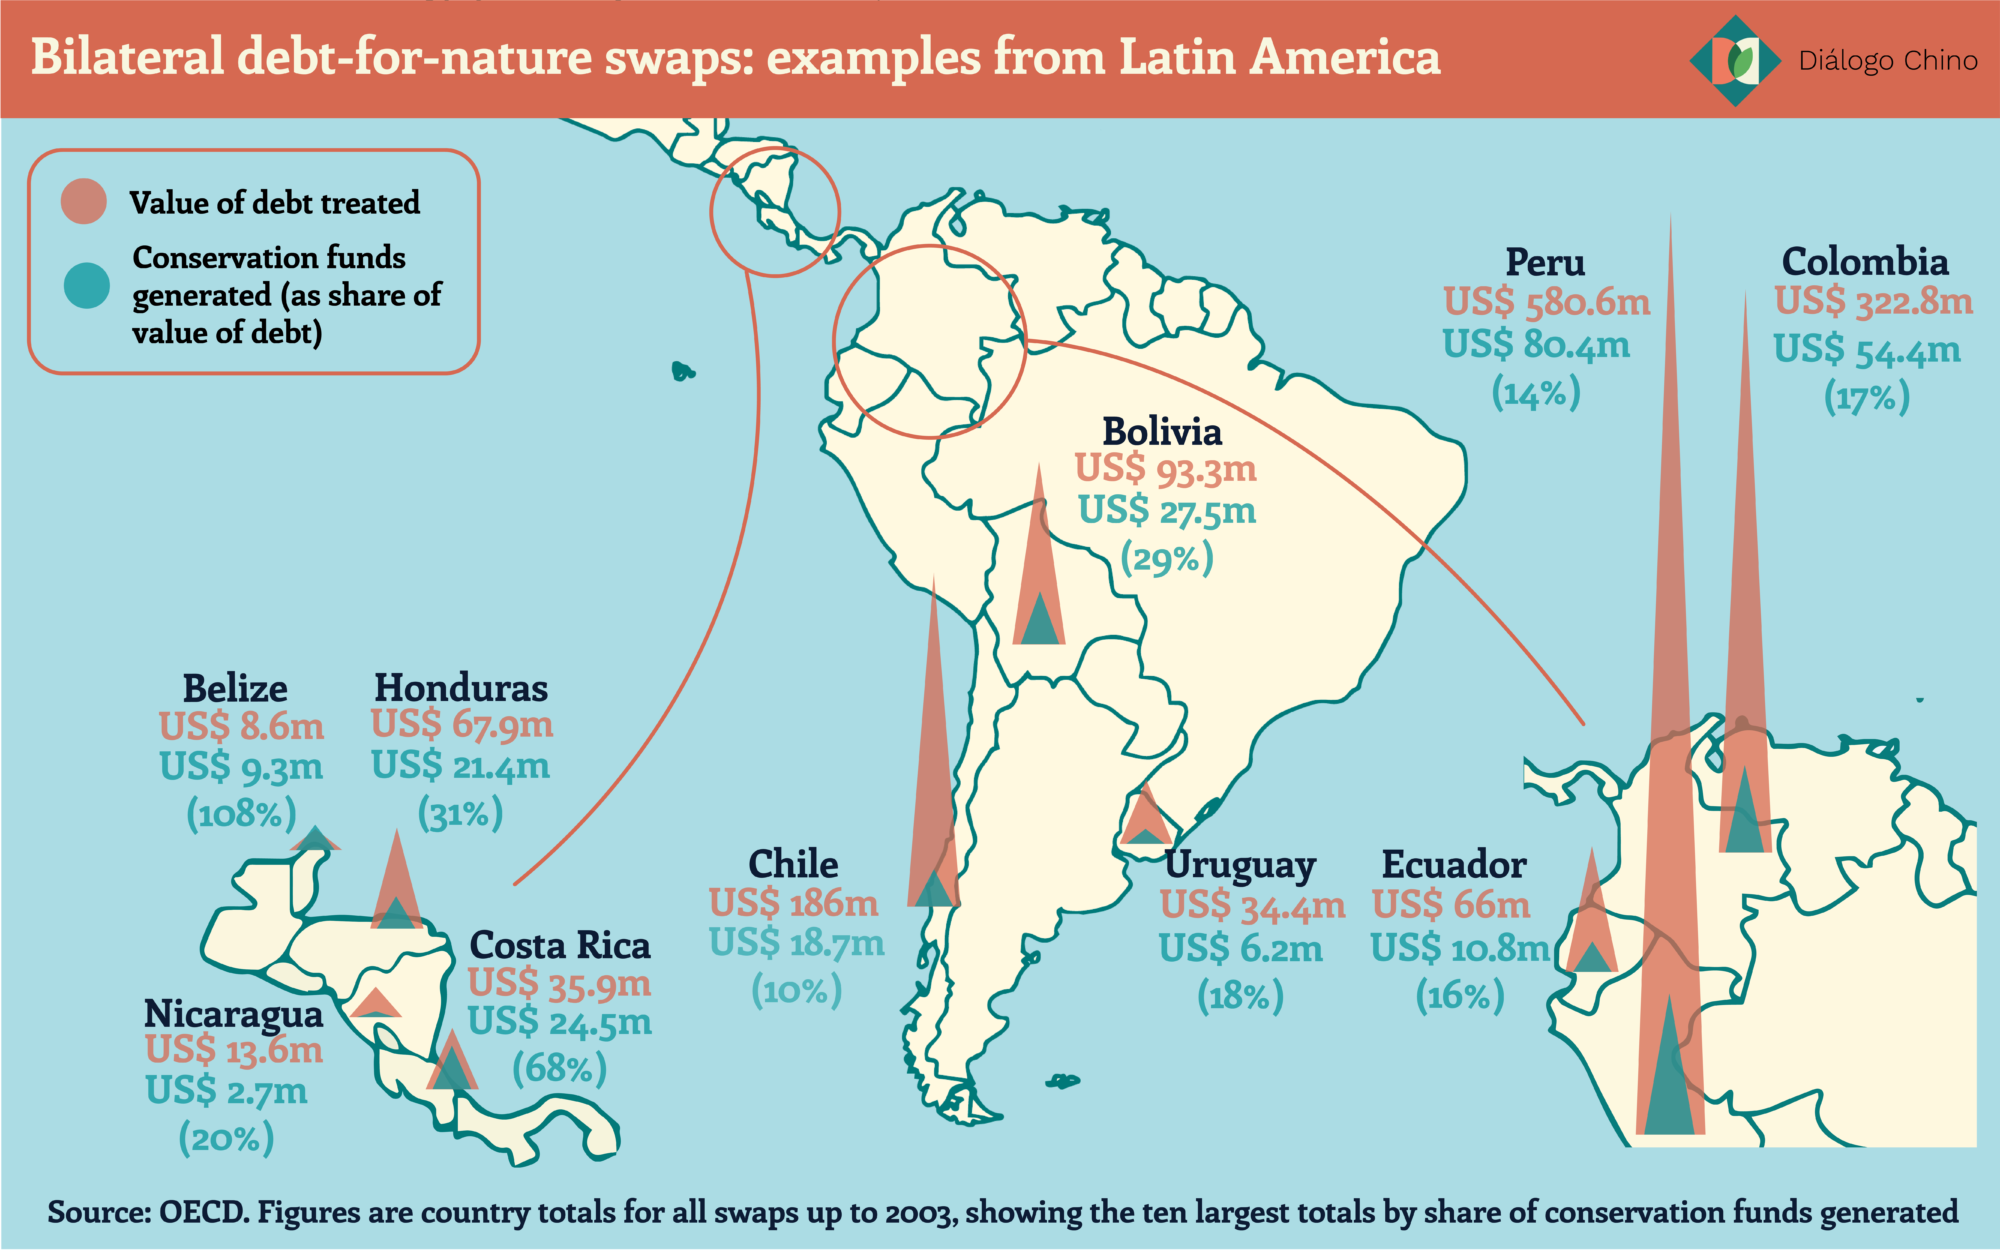 Mapa de américa latina con ejemplos de países con canjes de deuda por naturaleza